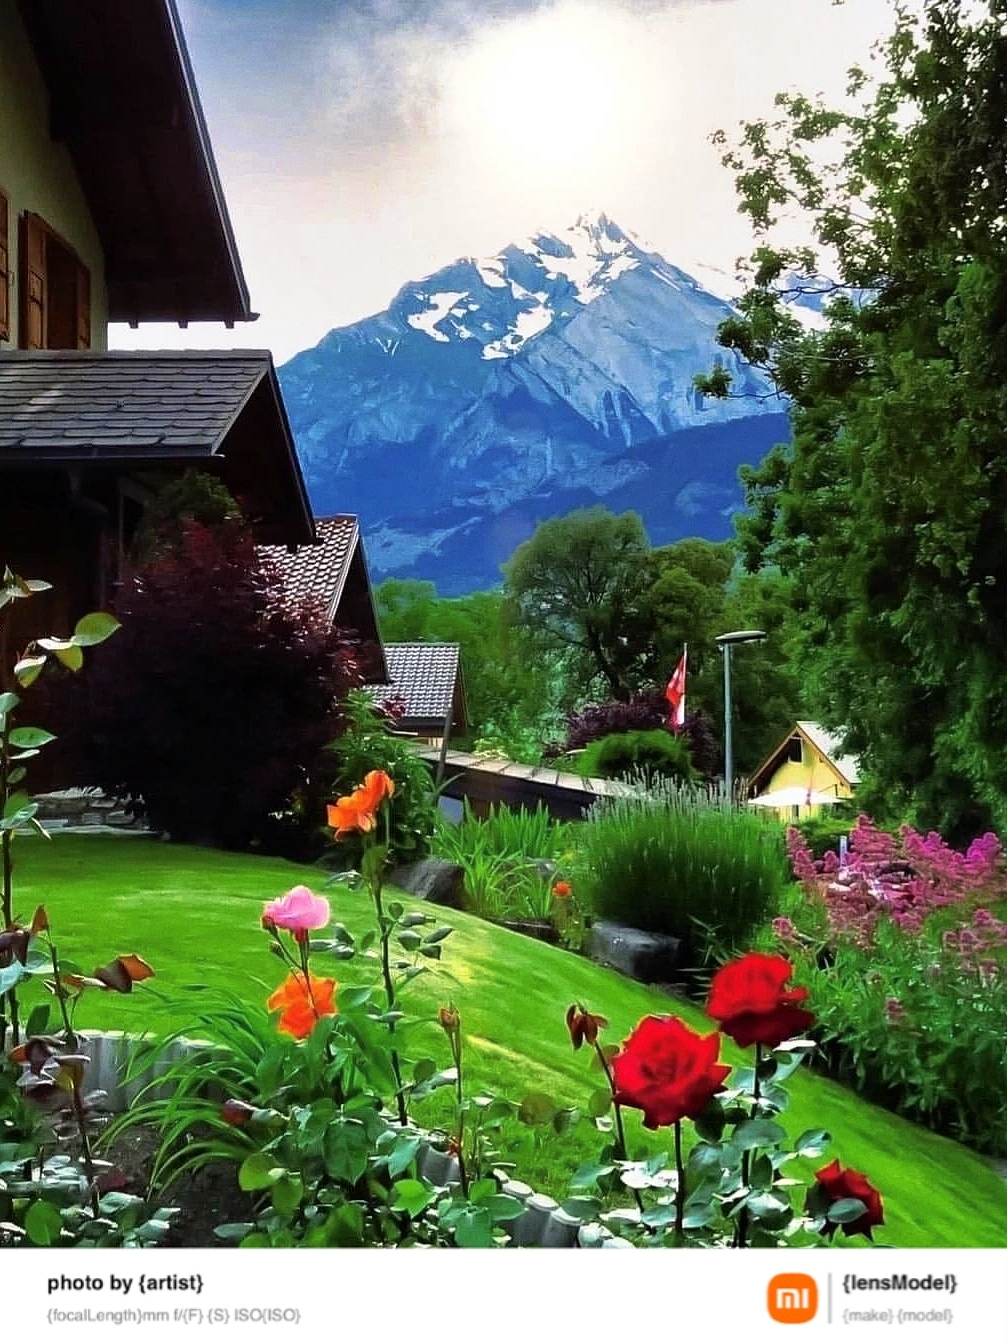 亲！来看看瑞士绝美的风景吧！